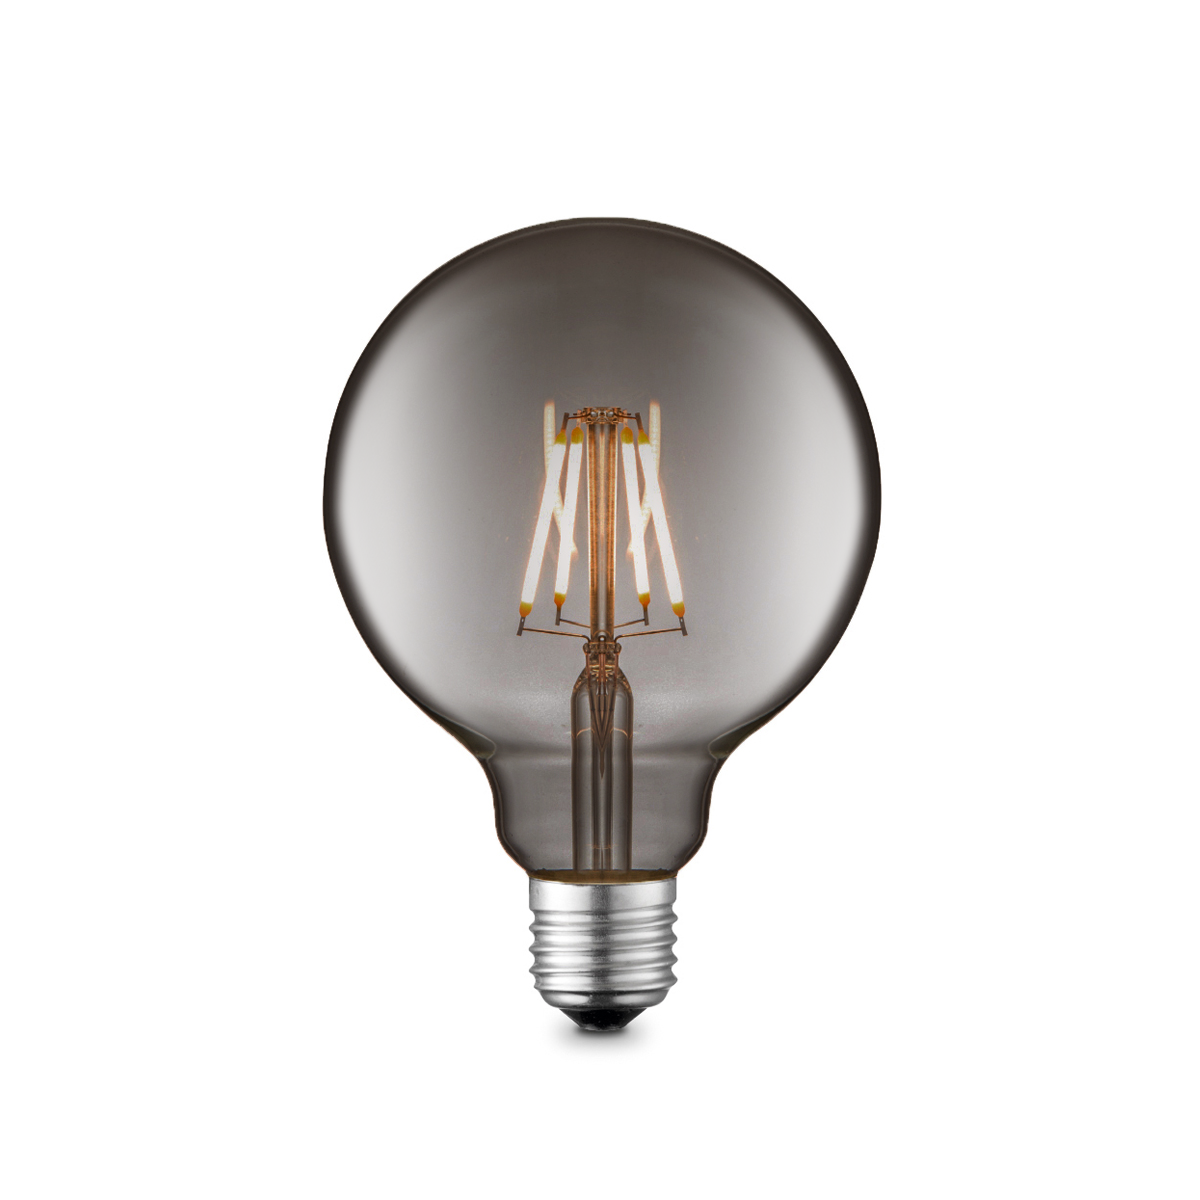 Tangla lighting - TLB-8004-04TM - LED Light Bulb Deco filament - G95 4W titanium - dimmable - E27